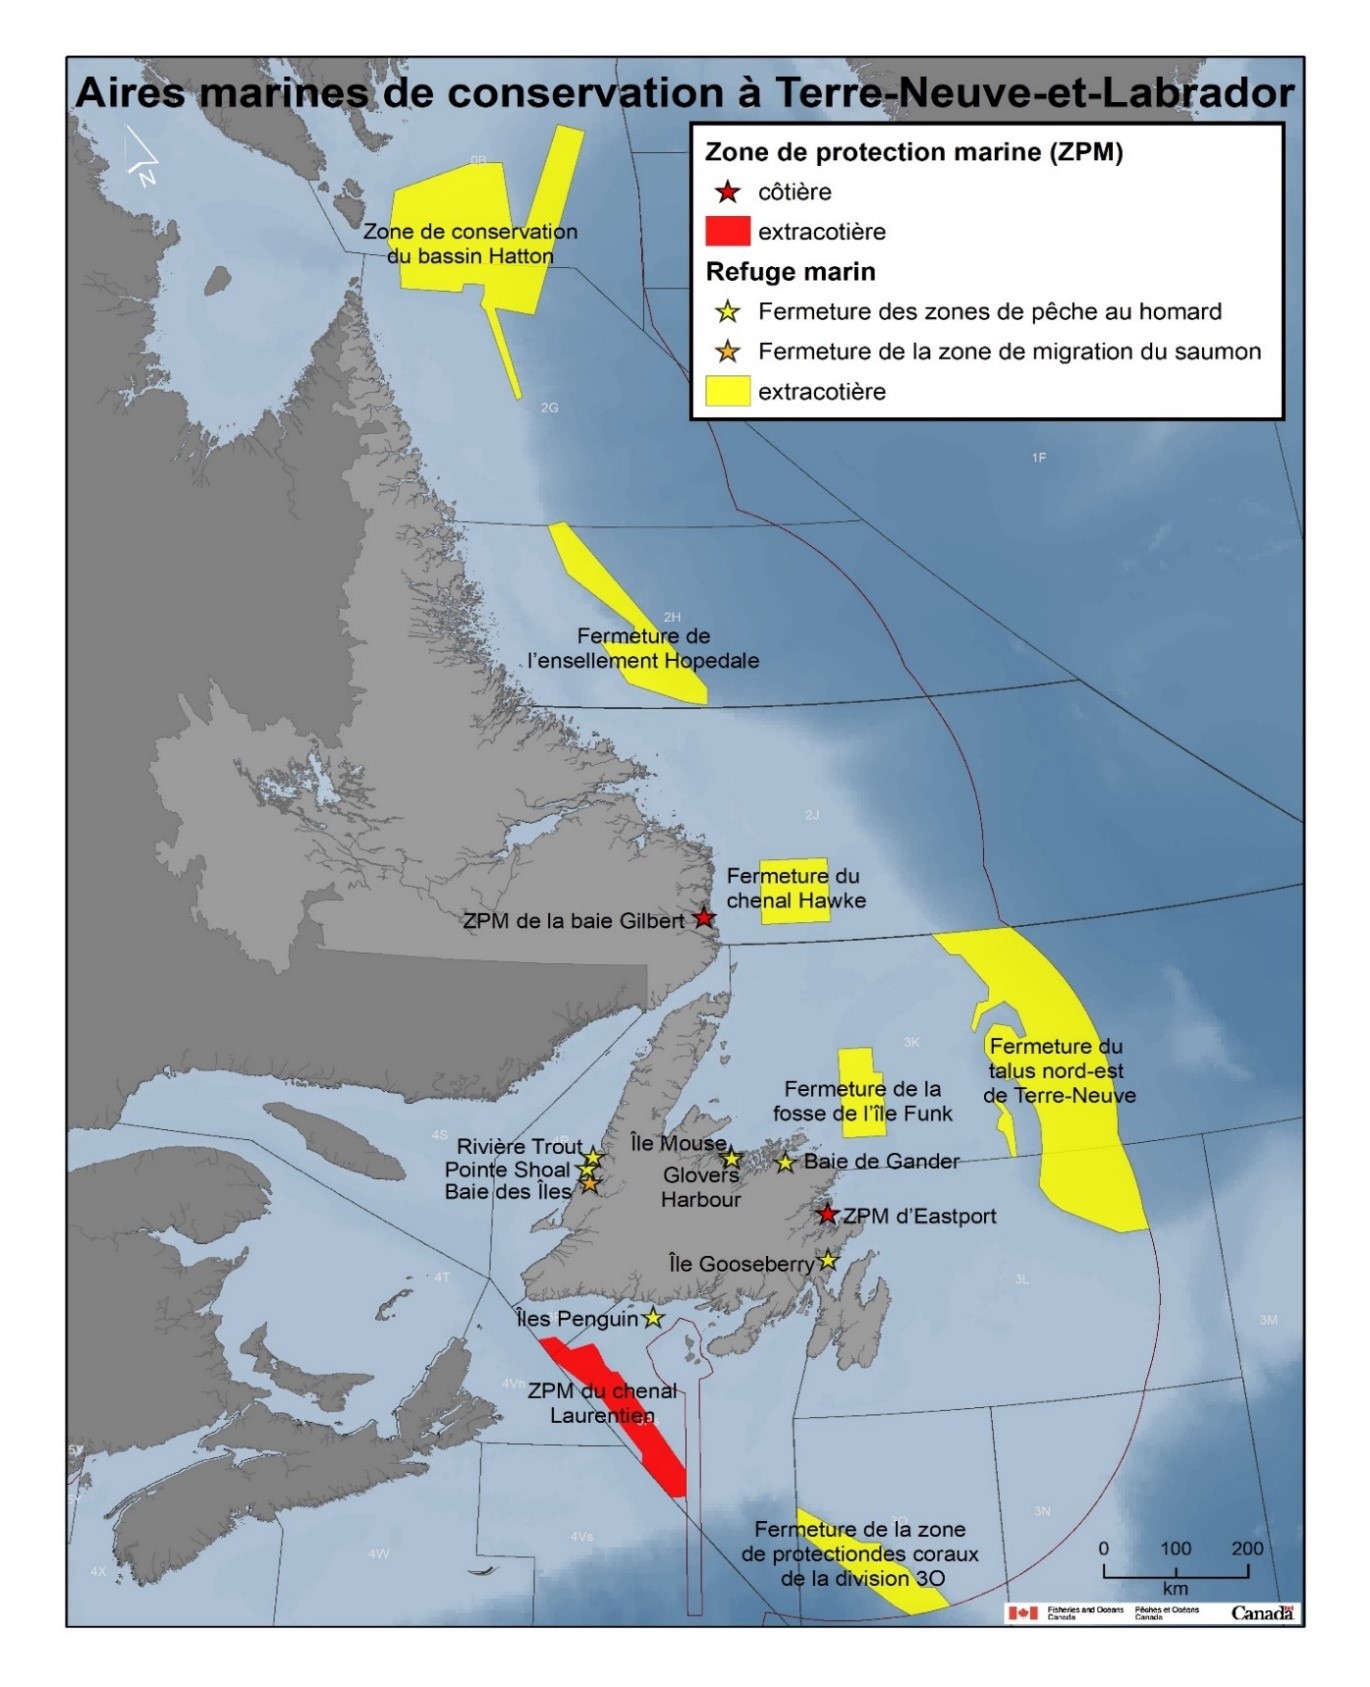 Carte des aires marines de conservation dans la région de Terre-Neuve-et-Labrador